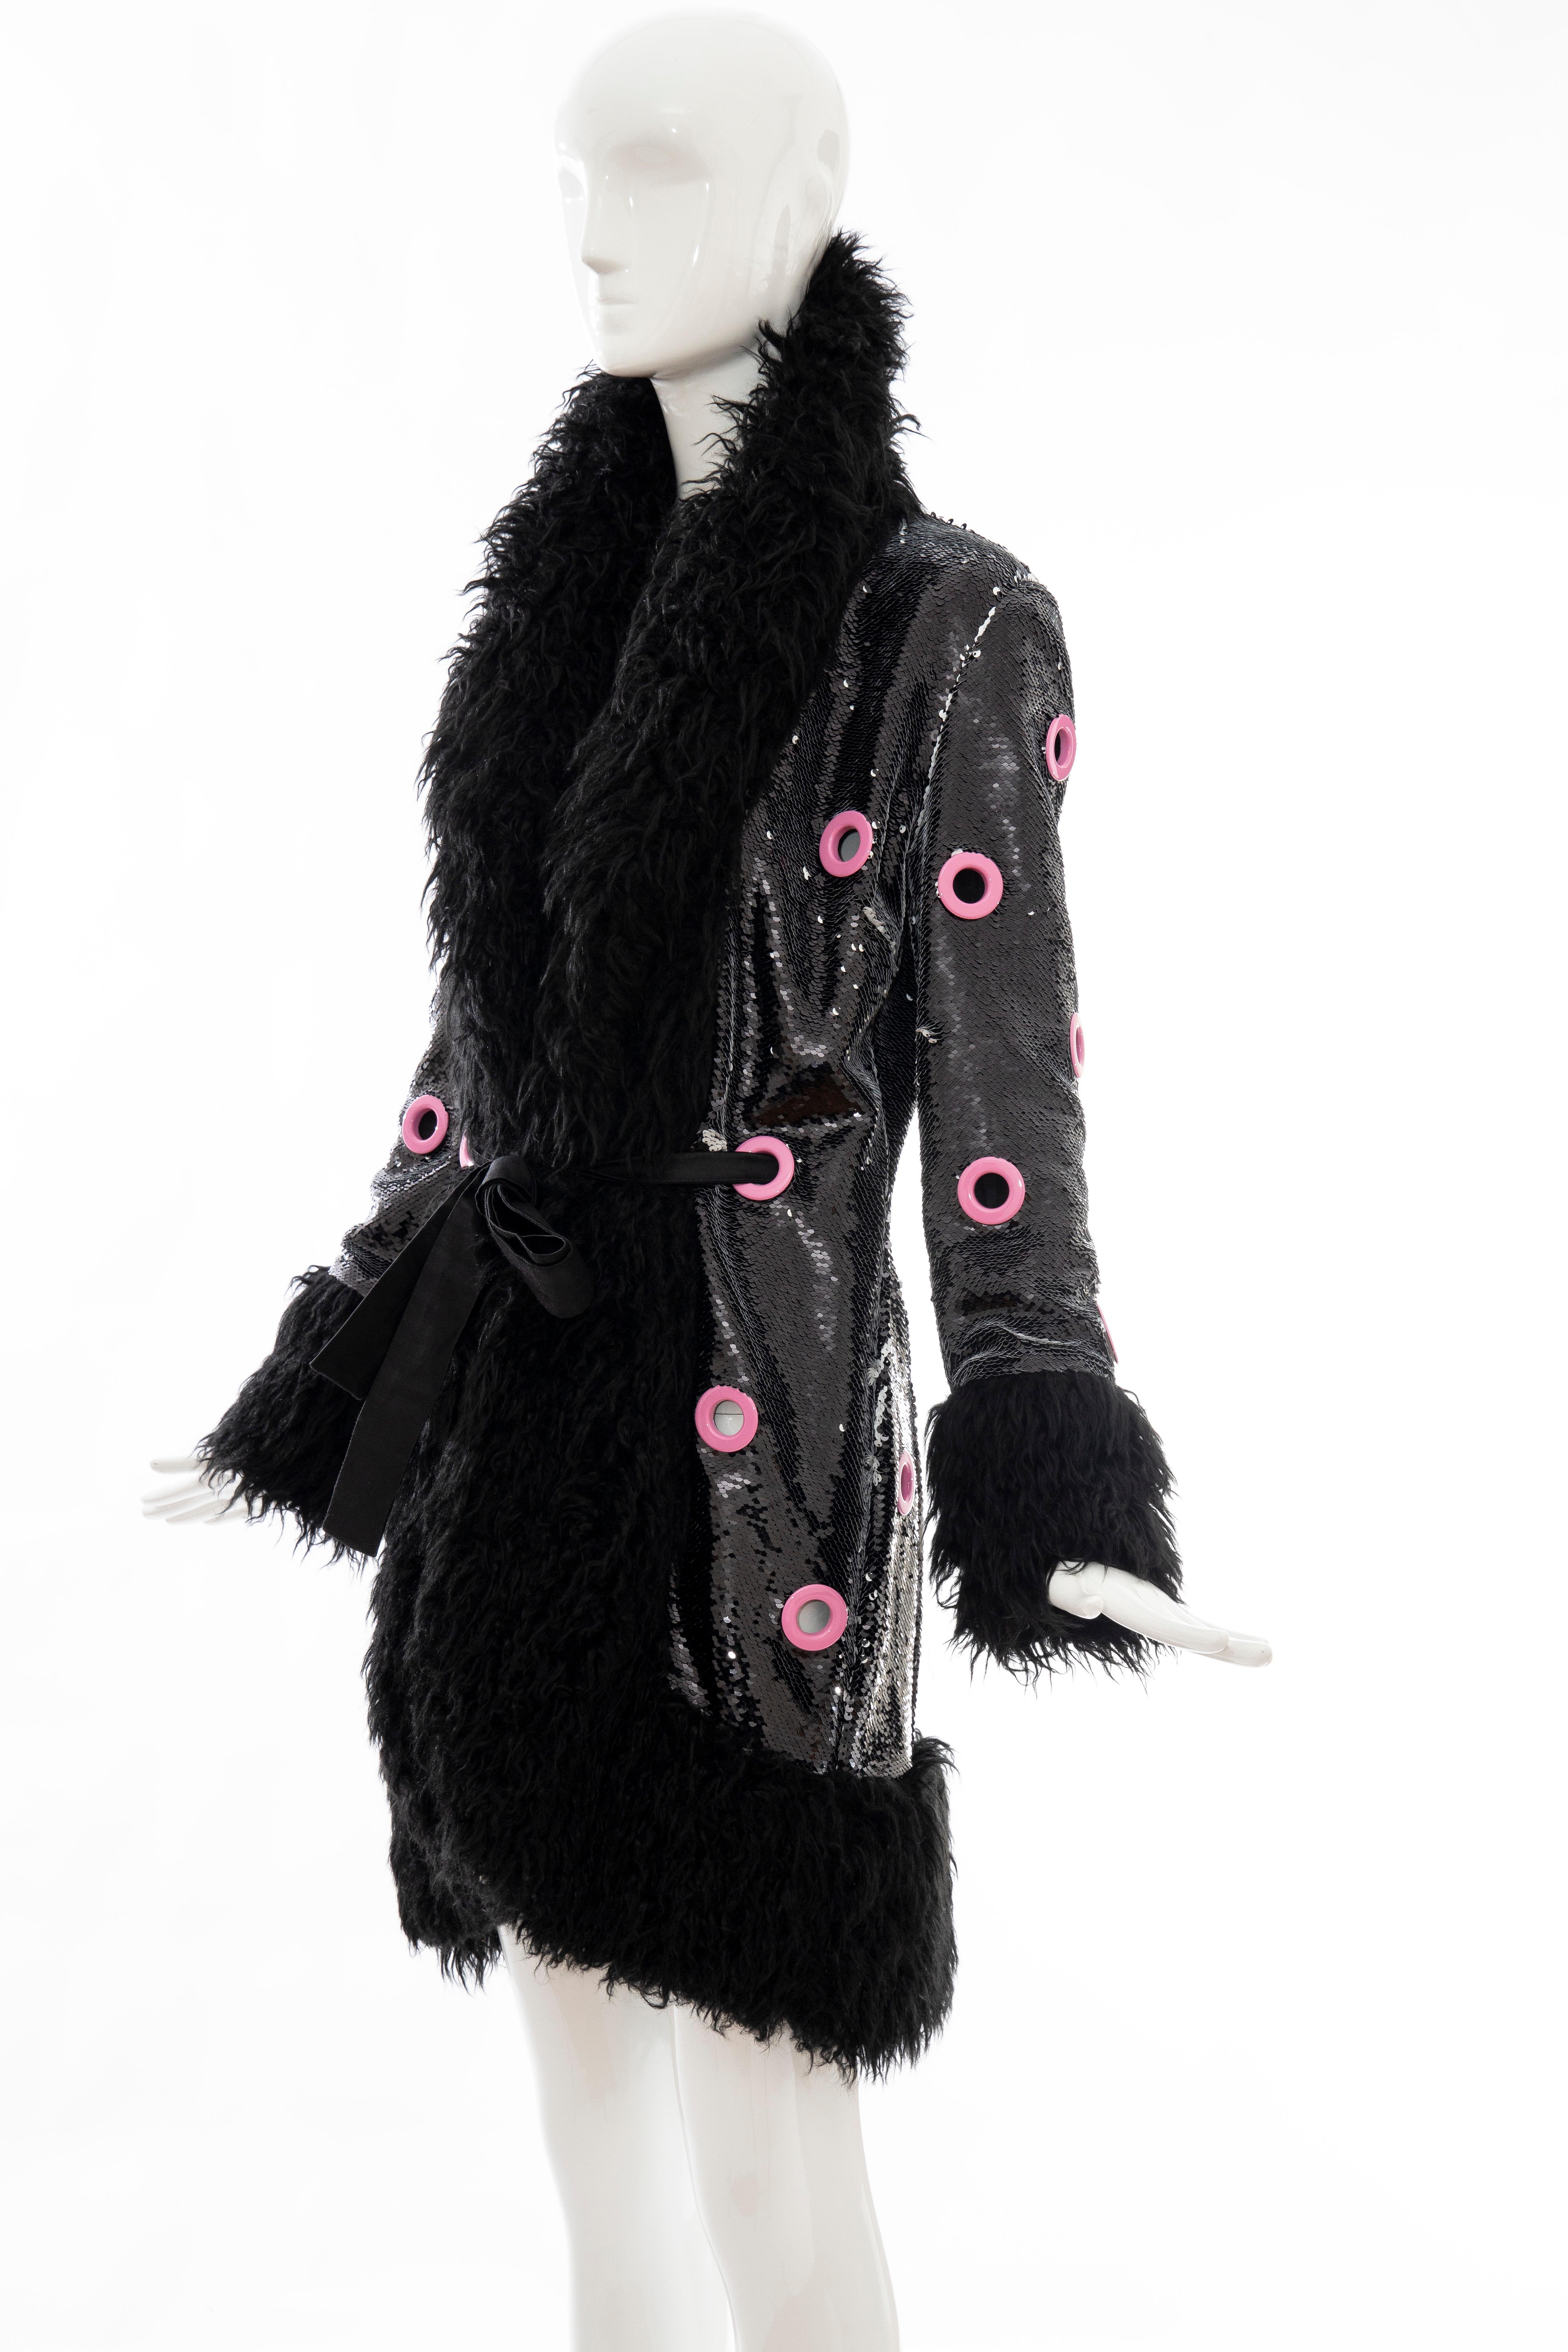 Jeremy Scott Runway Black Sequins Faux Fur Pink Enamel Grommets Coat, Fall 2016 7